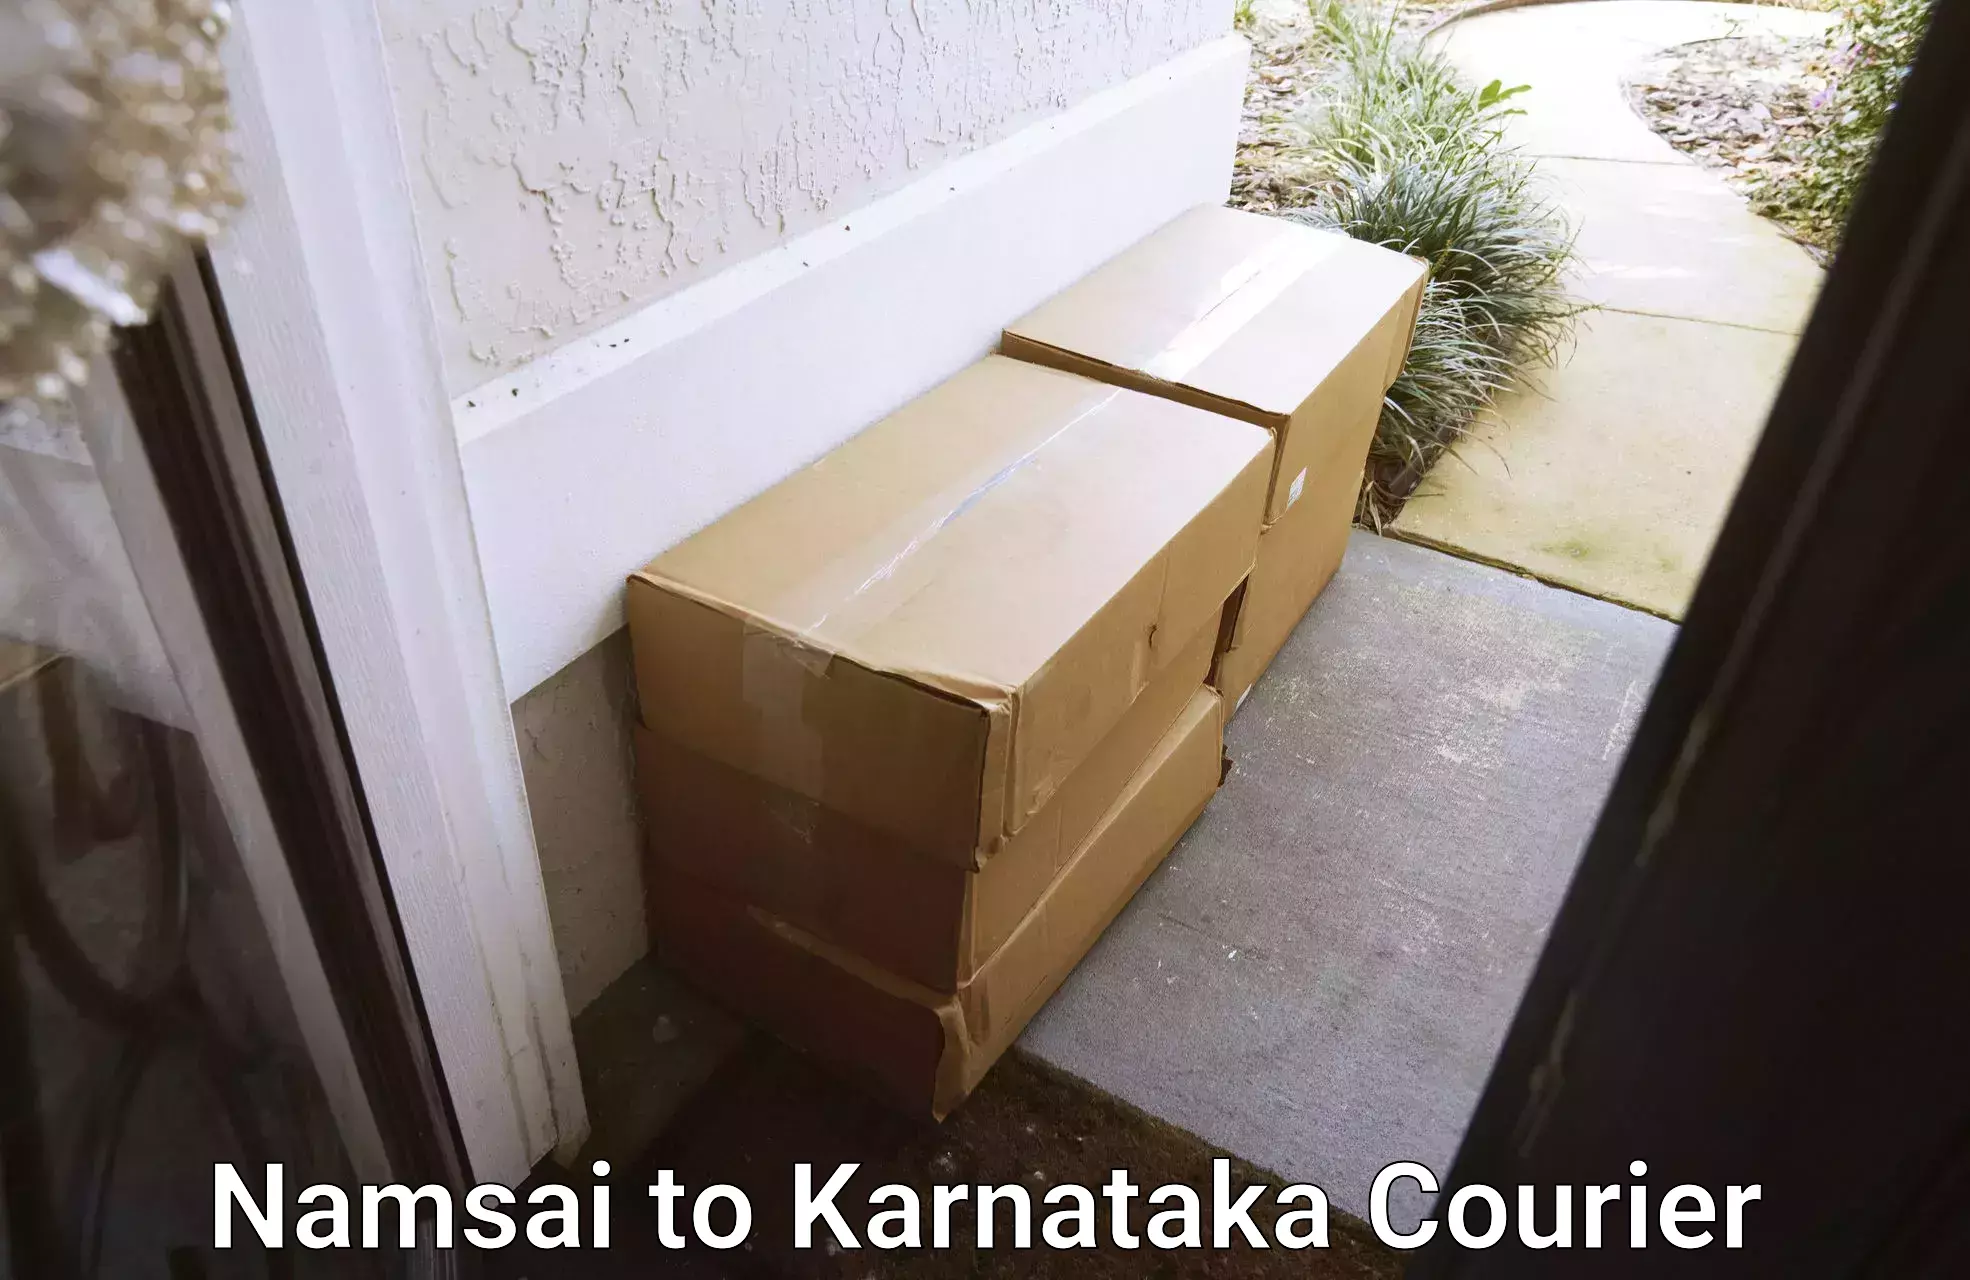 Advanced delivery network Namsai to Rattihalli